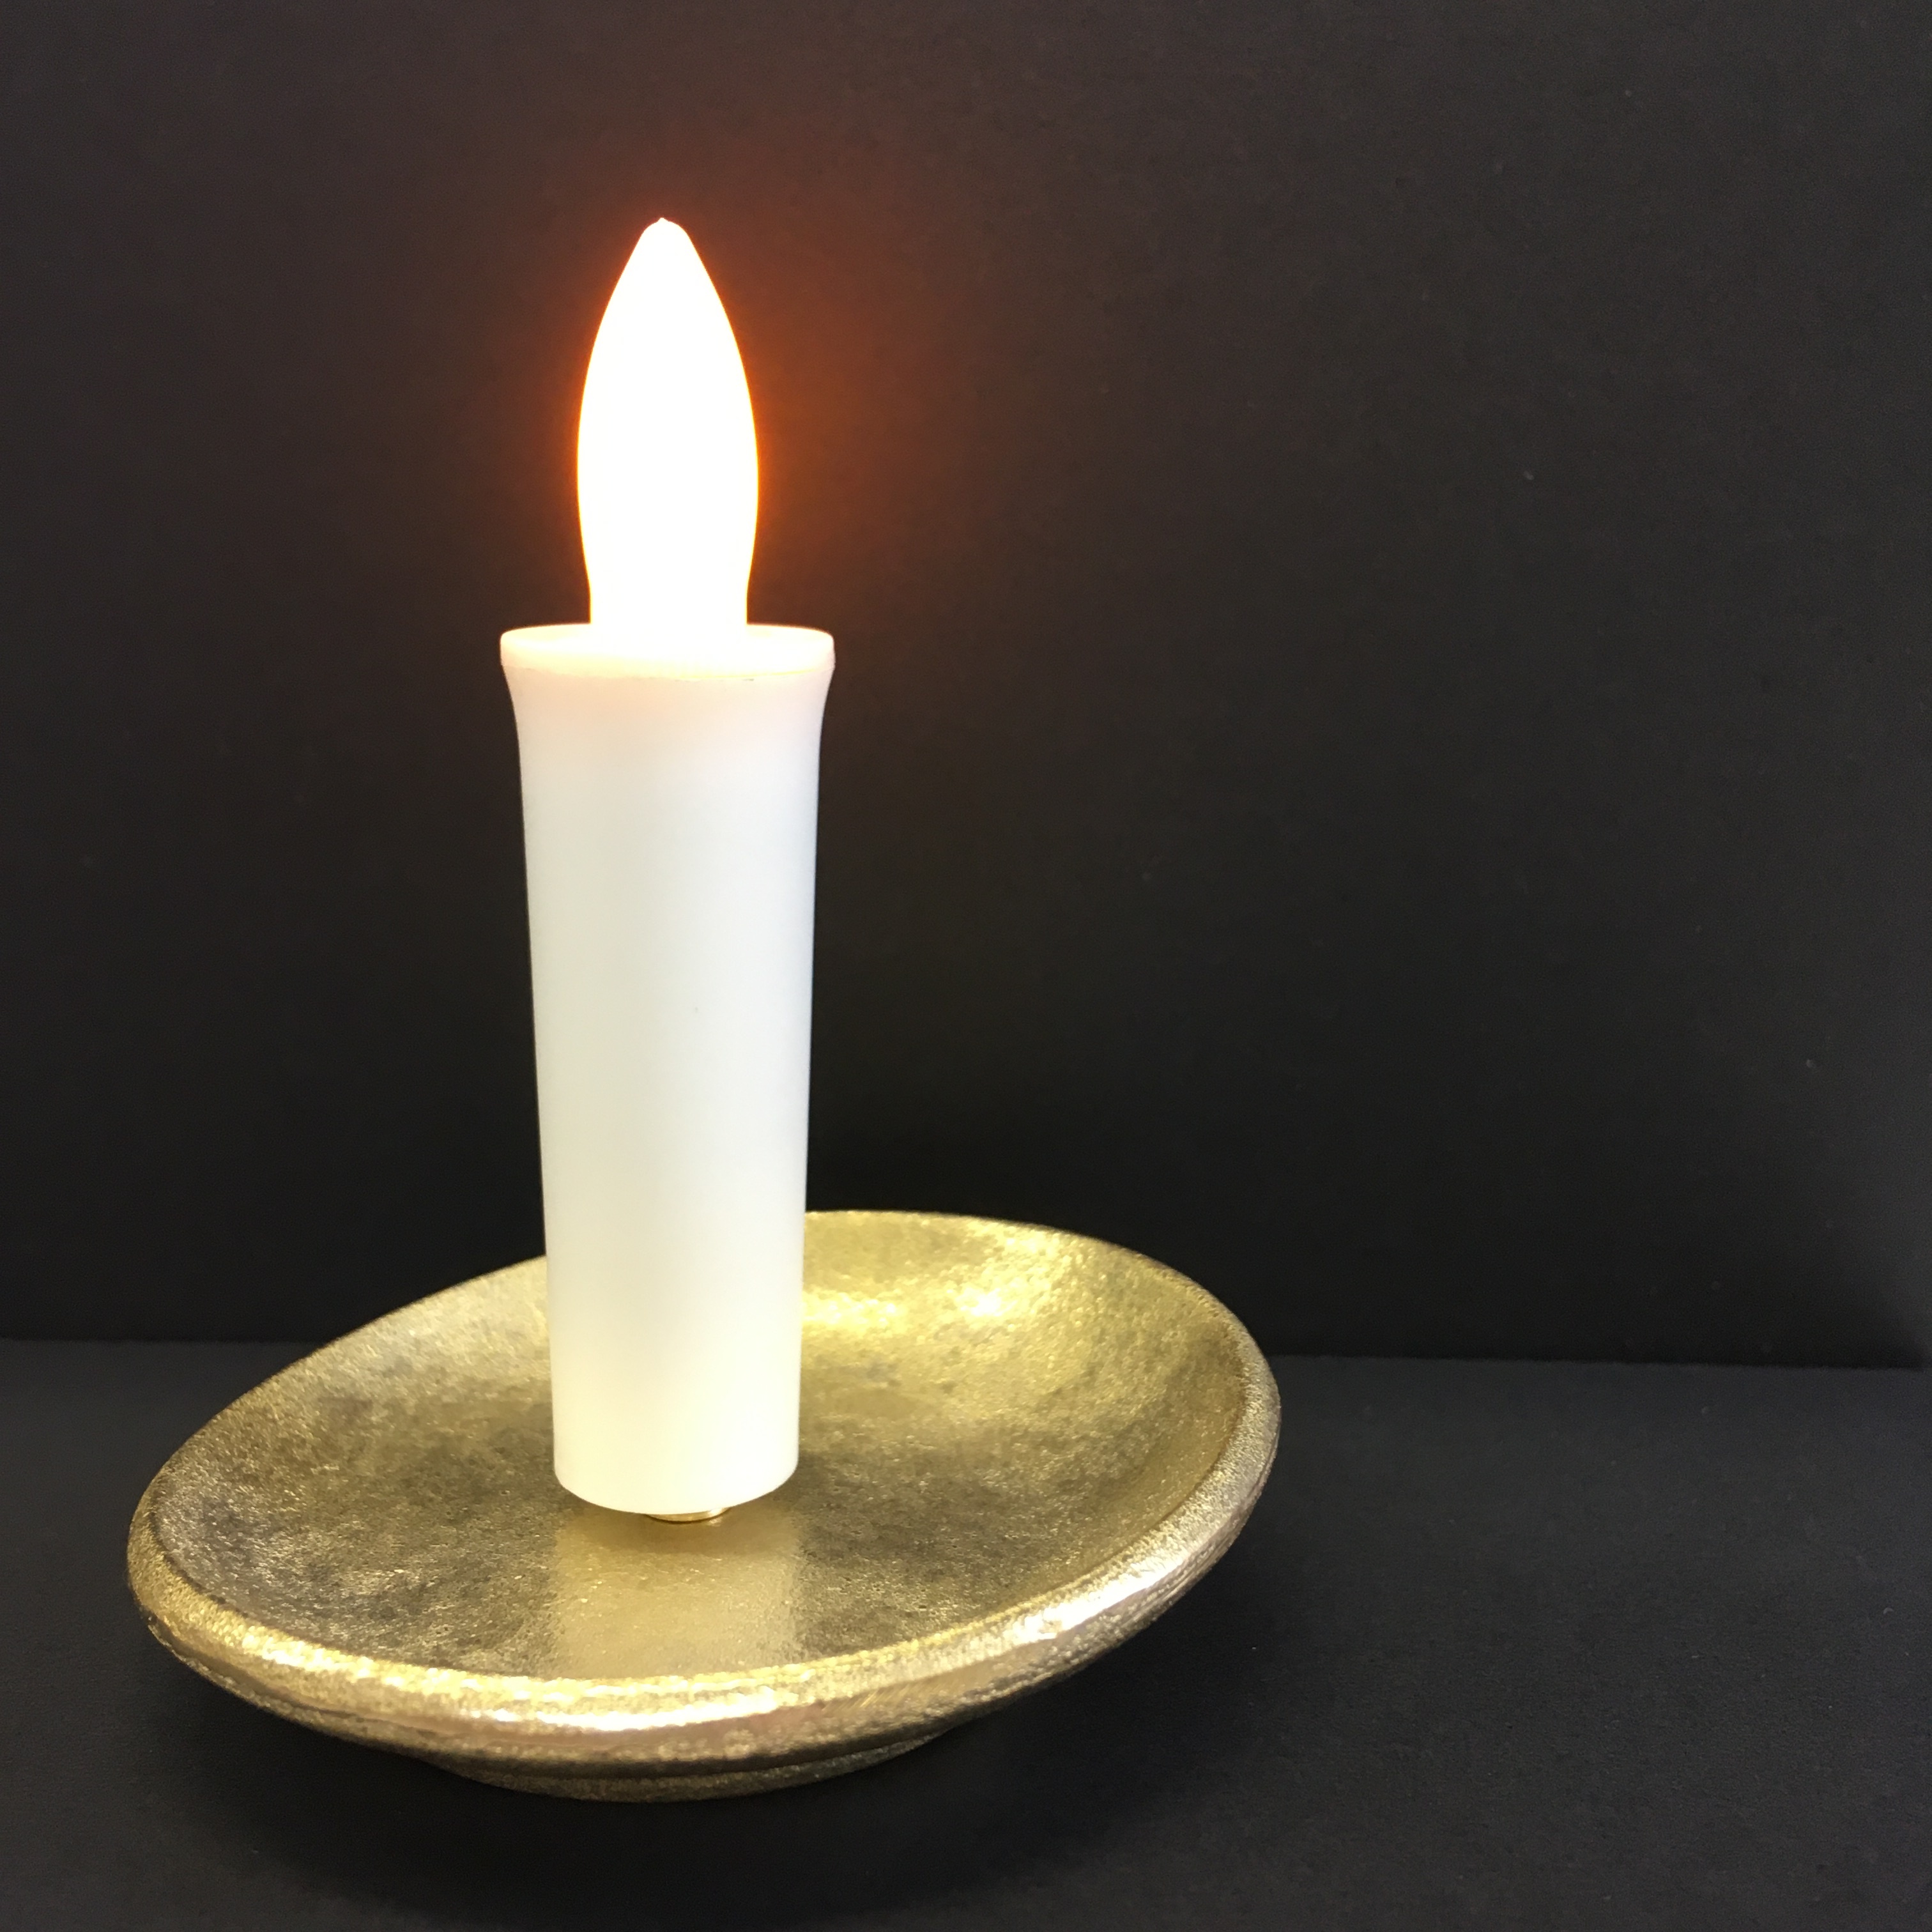 ロウソク型led10分タイマー 手軽に１０分間の瞑想をサポートする スイッチonで10分間点灯するロウソク型led照明と燭台のセット 瞑想蝋燭 Led 蝋燭 燭台セット A 278 For Slow Living